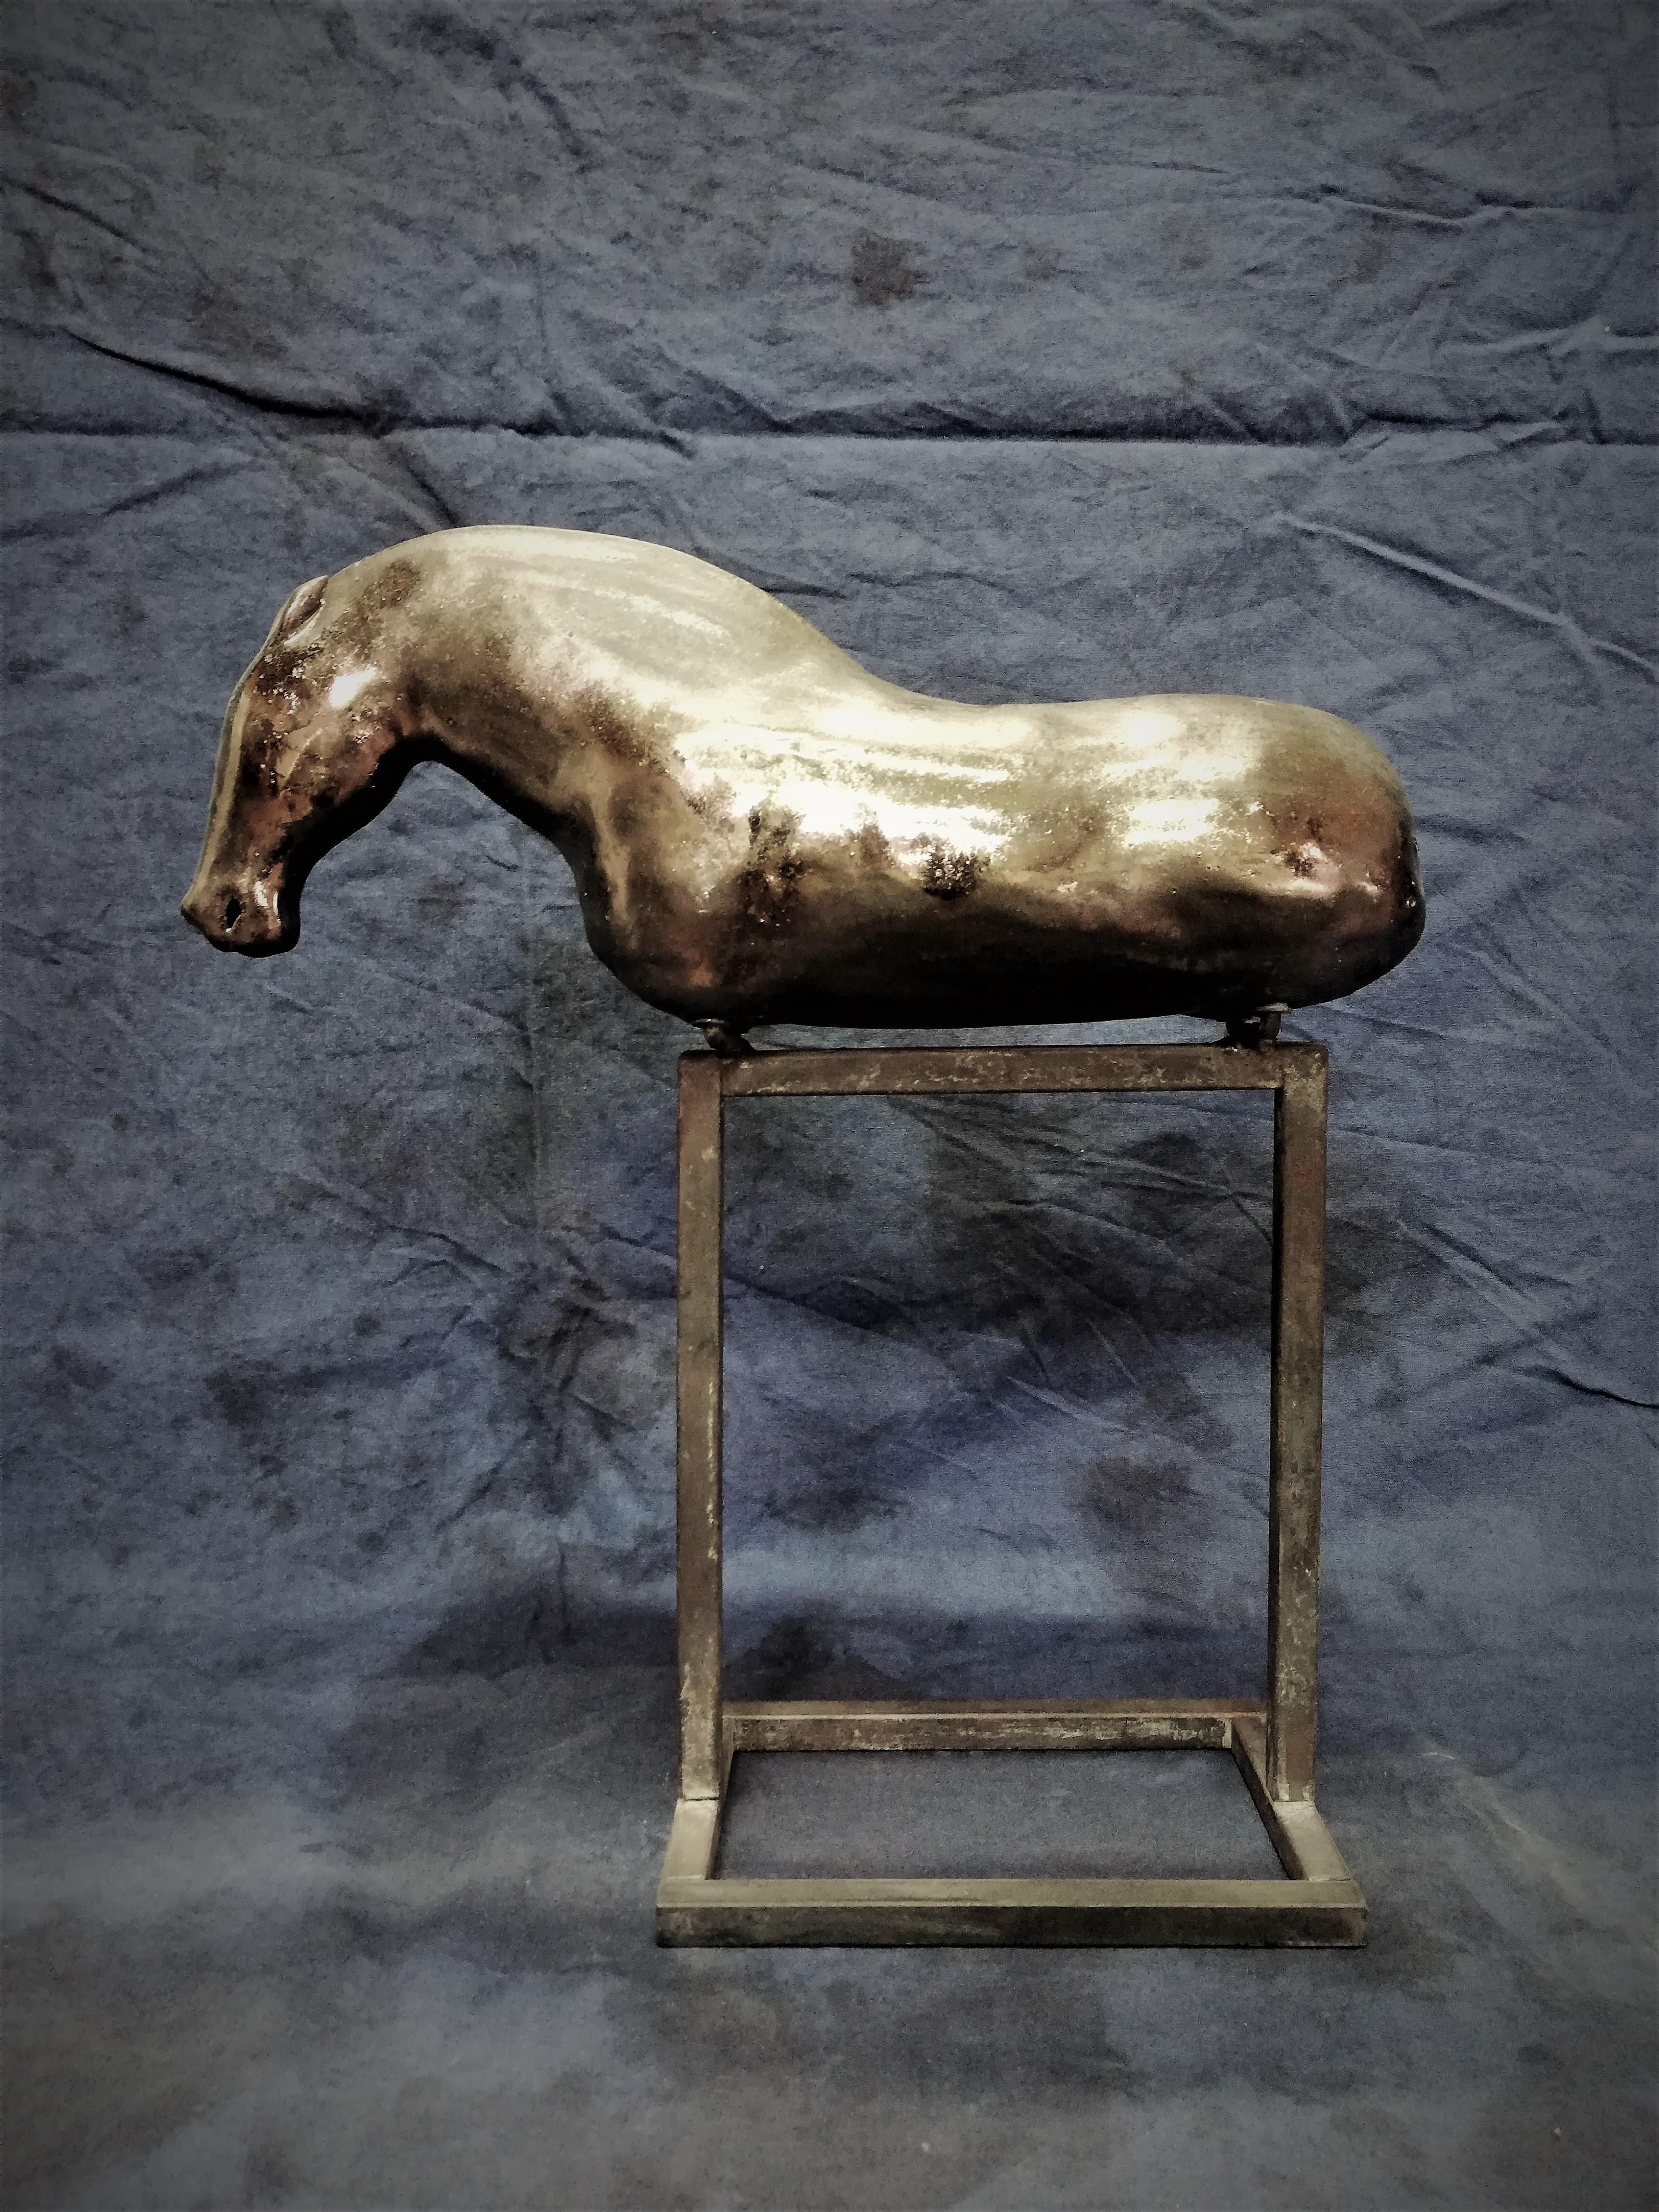 Boguslaw Popowicz Figurative Sculpture - Bogulaw Popowicz, Unique Golden Horse, Welded Ceramic Technique, 32x28x10cm 2019